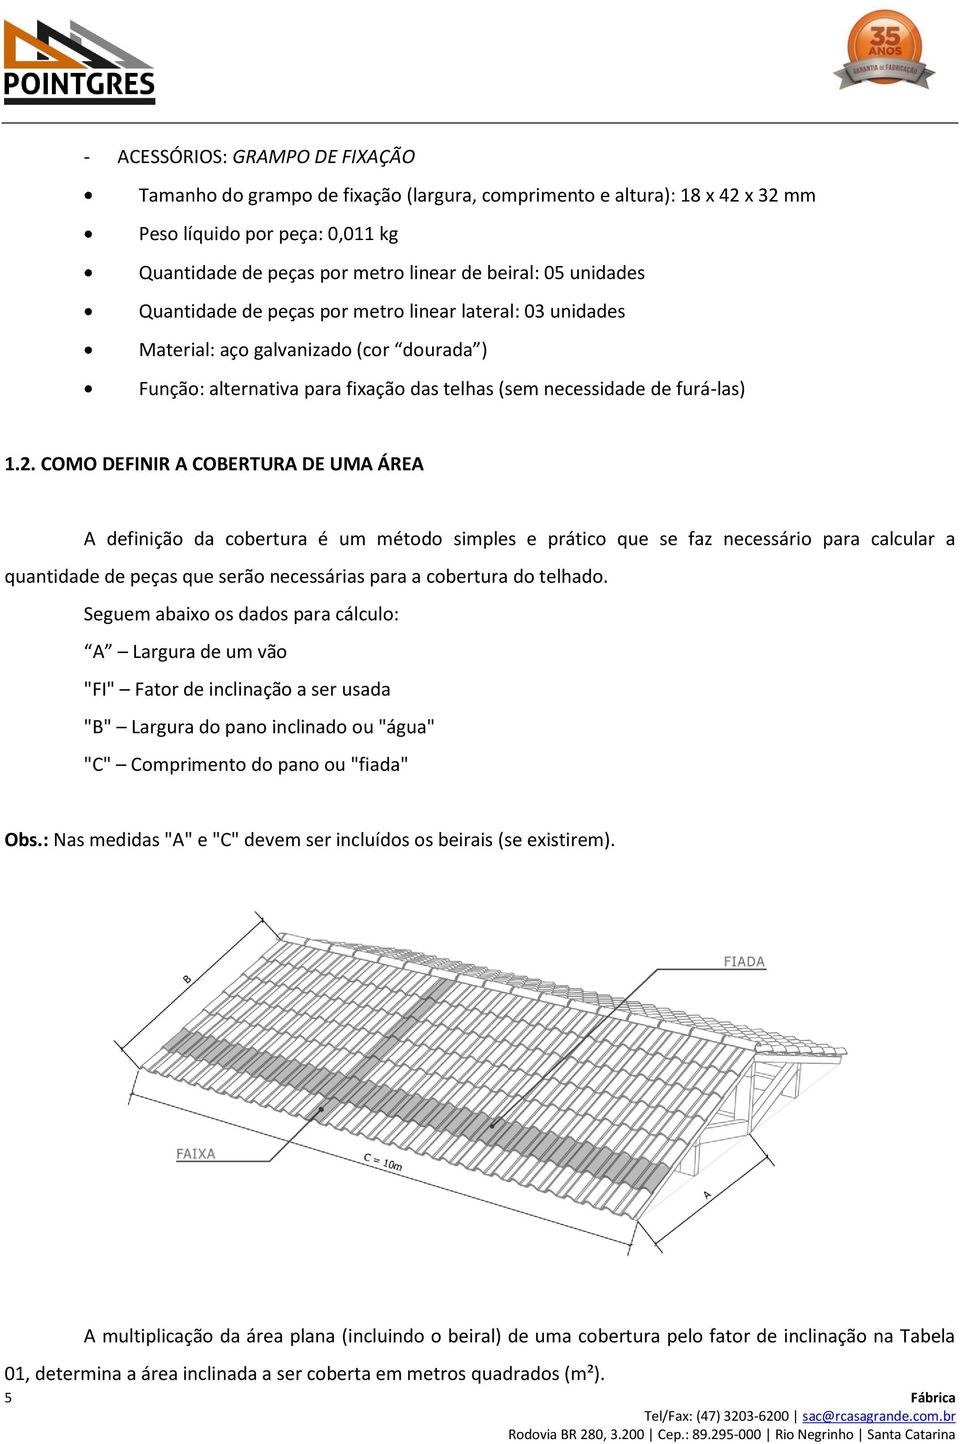 COMO DEFINIR A COBERTURA DE UMA ÁREA A definição da cobertura é um método simples e prático que se faz necessário para calcular a quantidade de peças que serão necessárias para a cobertura do telhado.